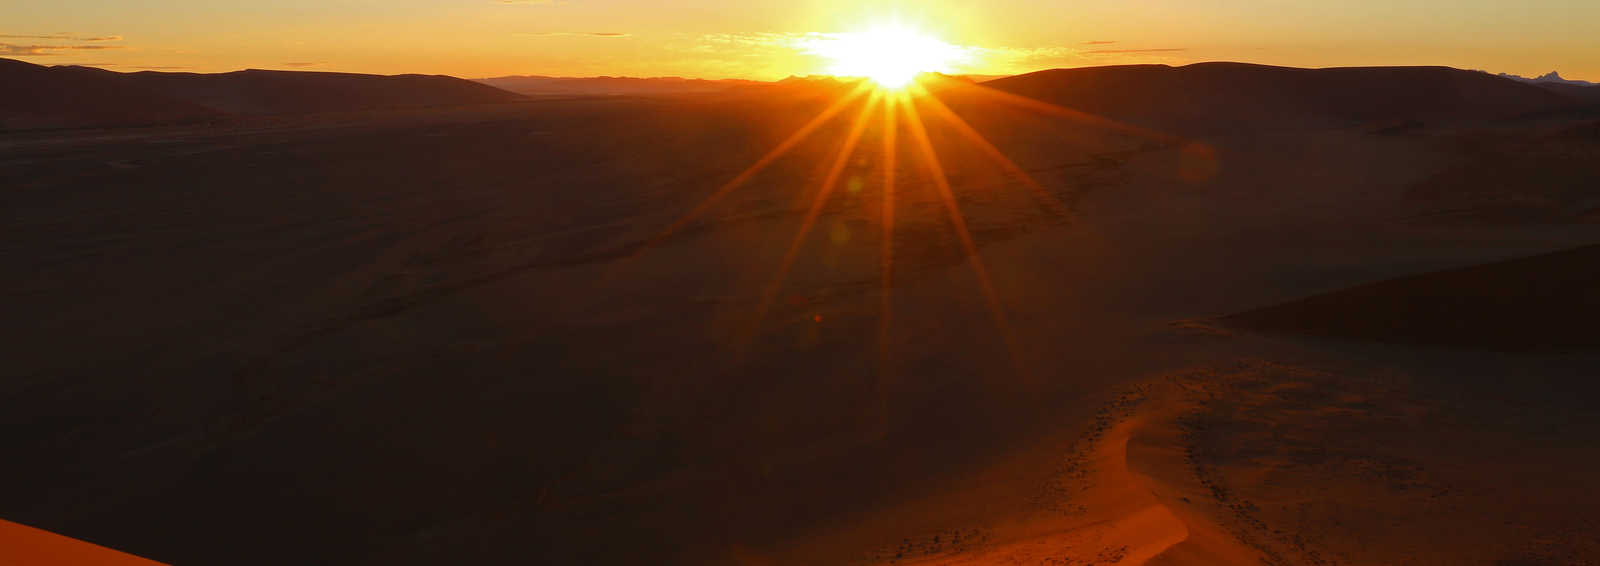 namibian sunset